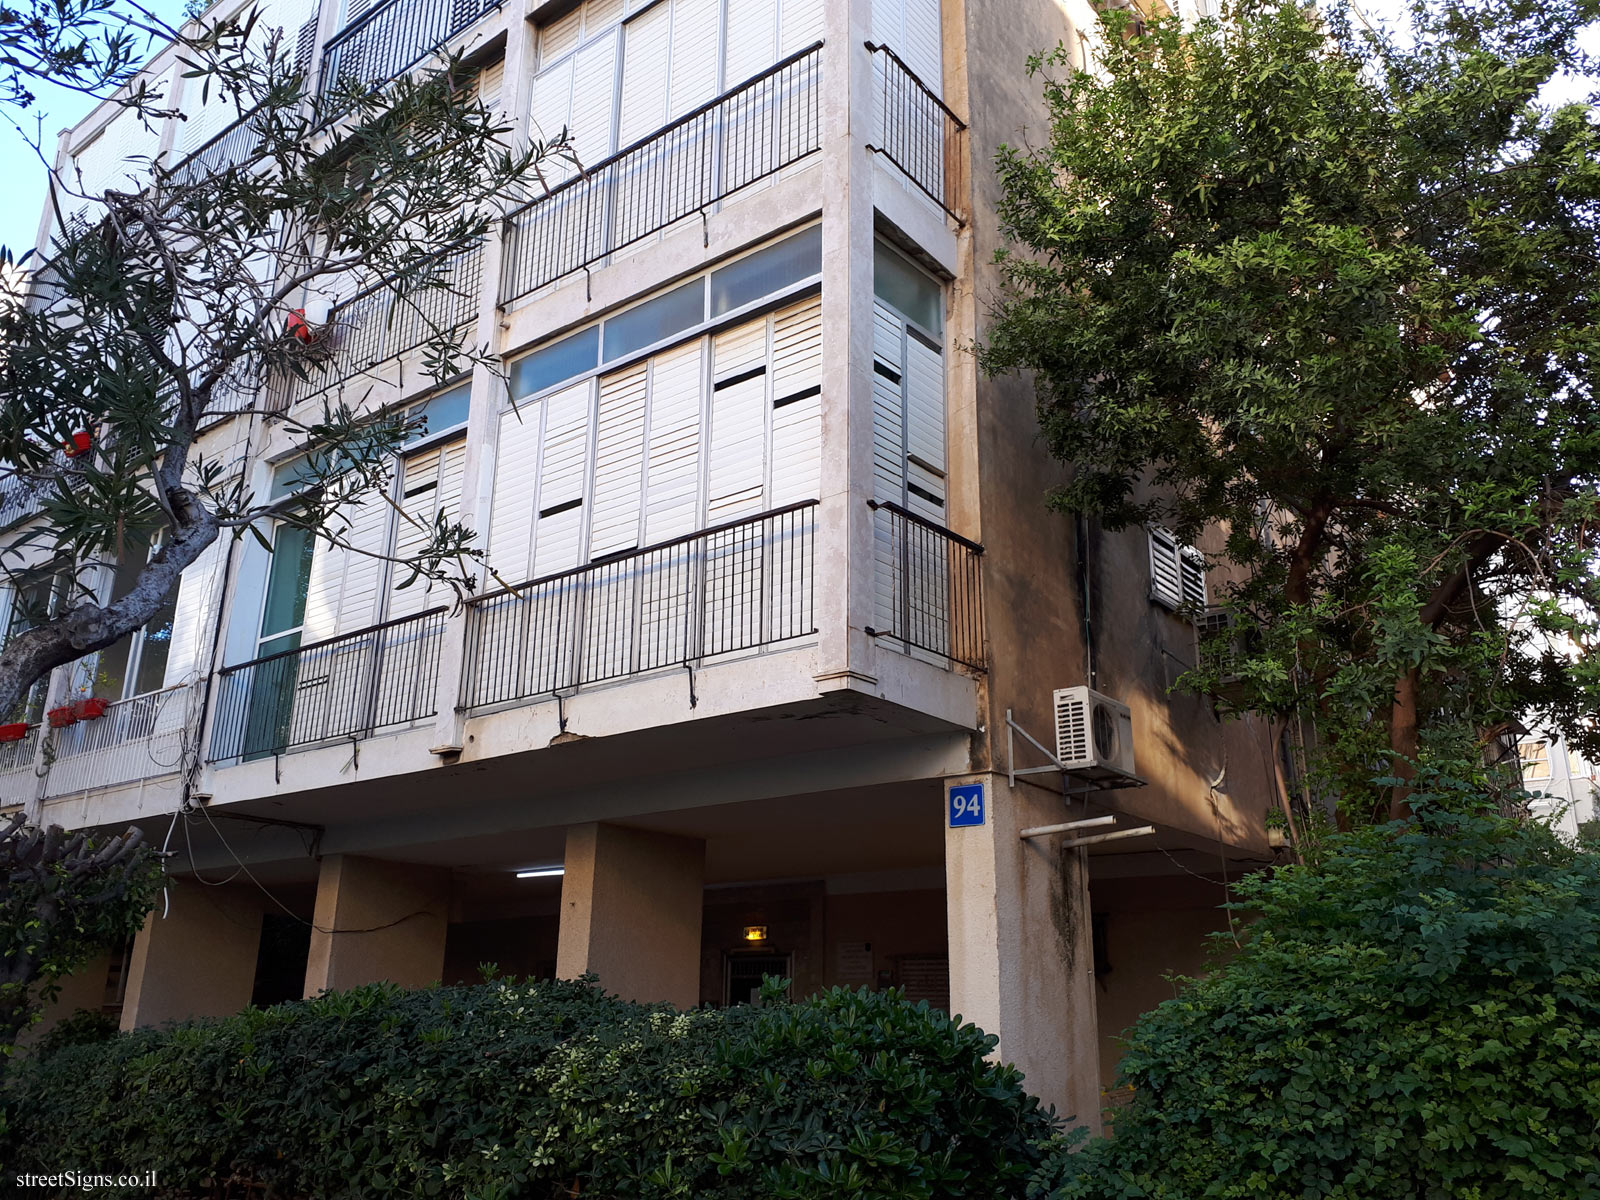 The house of Yair Hurvitz - Shlomo ha-Melekh St 94, Tel Aviv-Yafo